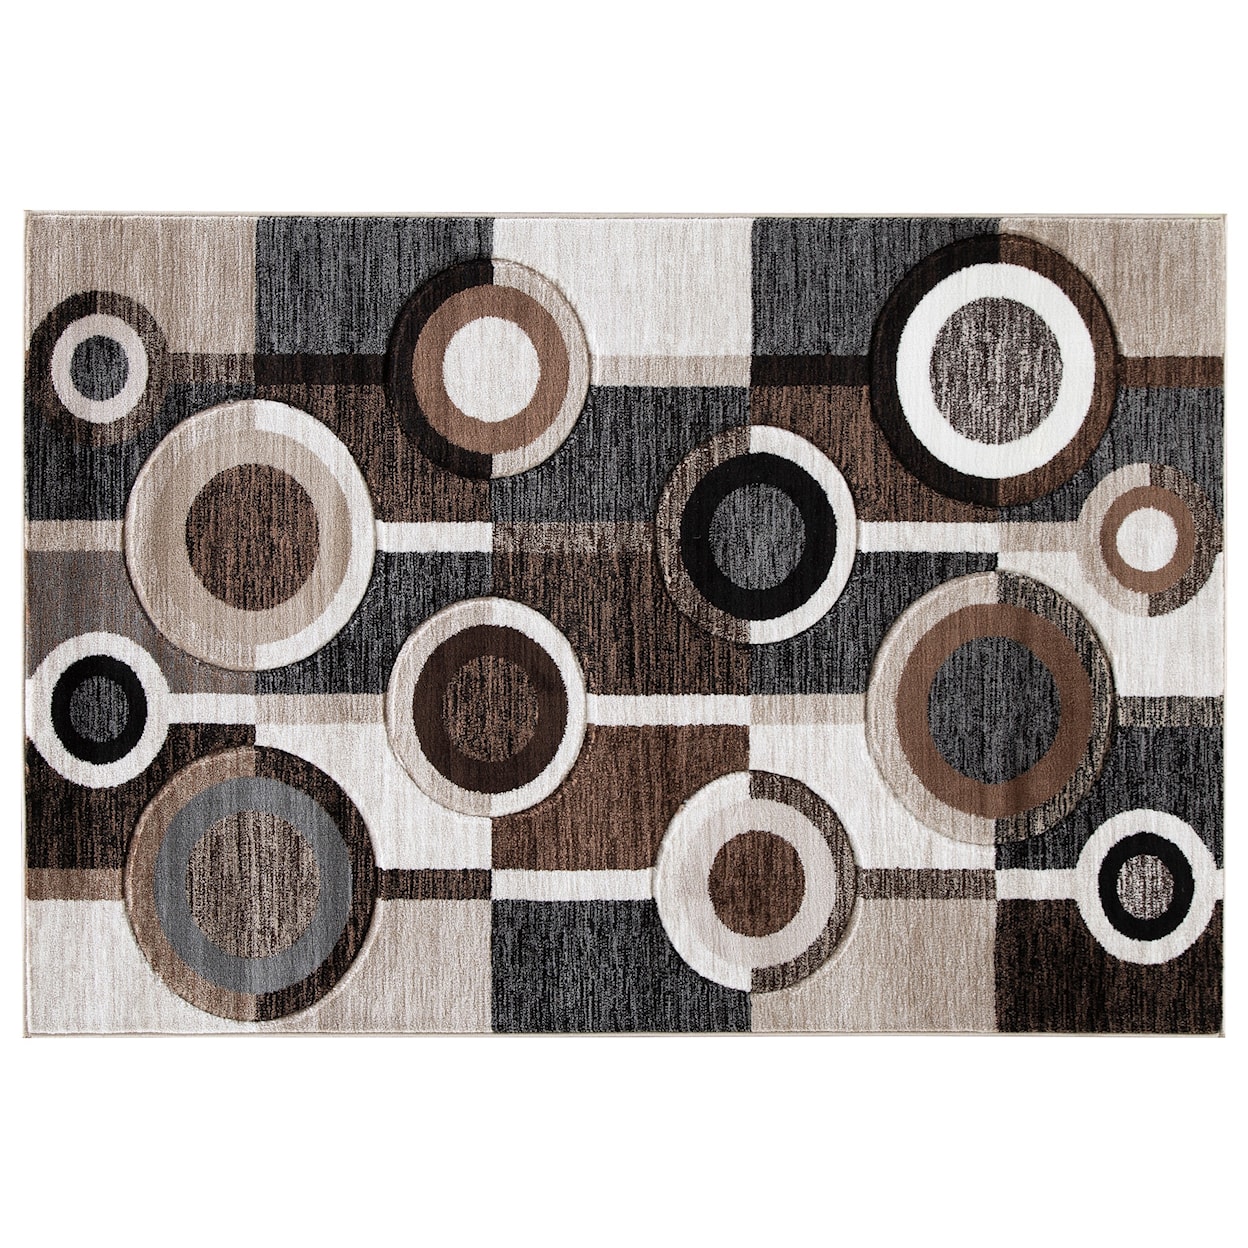 Signature Design Contemporary Area Rugs Guintte Black/Brown/Cream Medium Rug